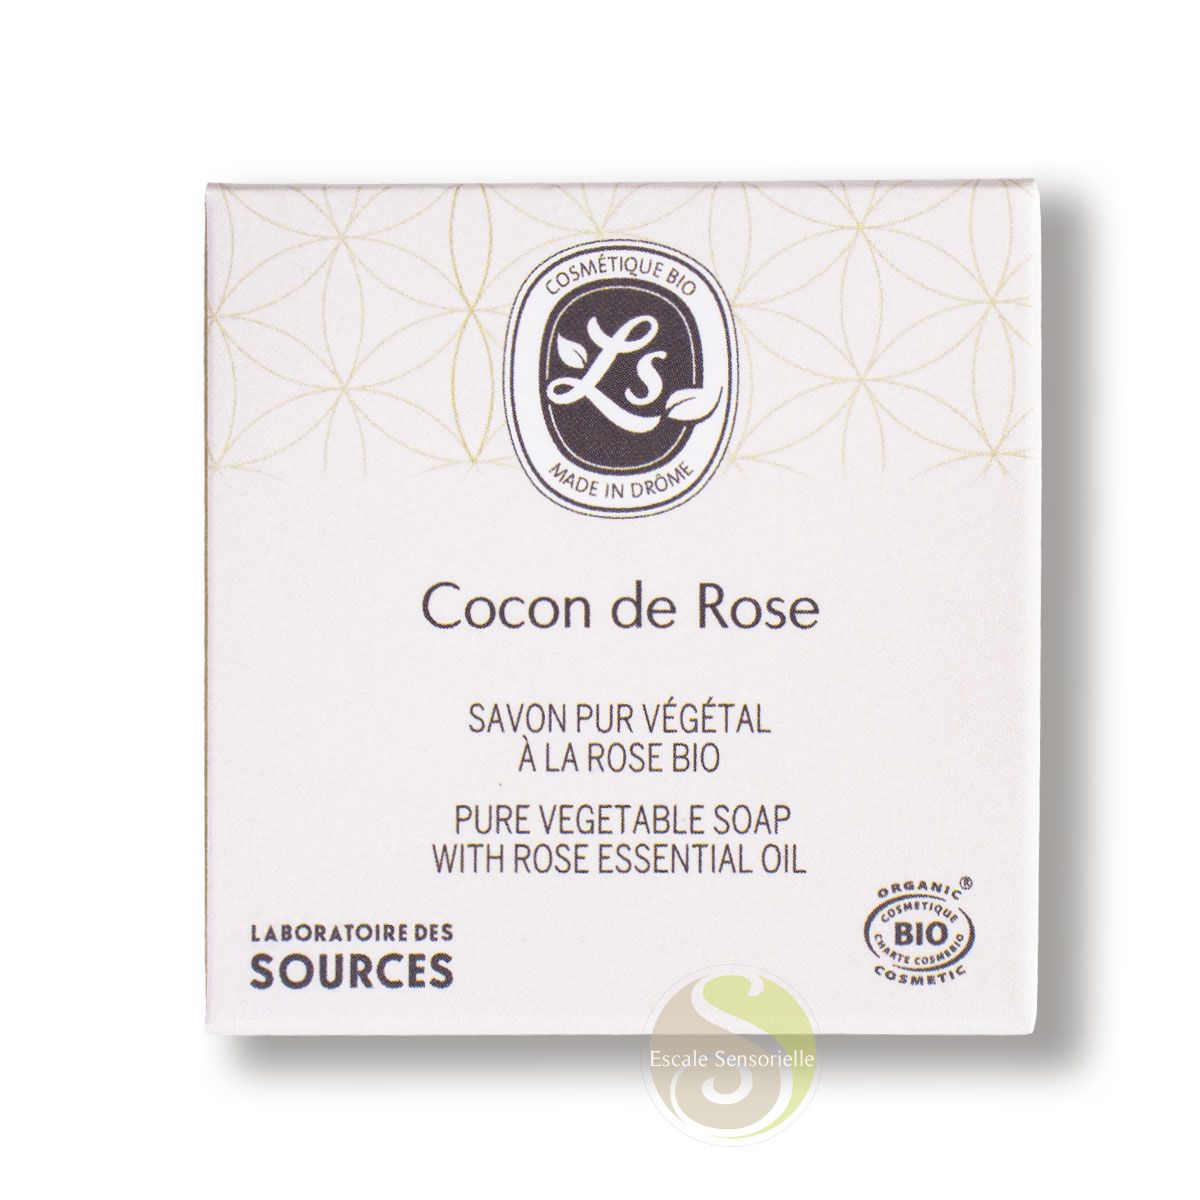 Savon bio Cocon de rose Laboratoire des sources à l'huile essentielle